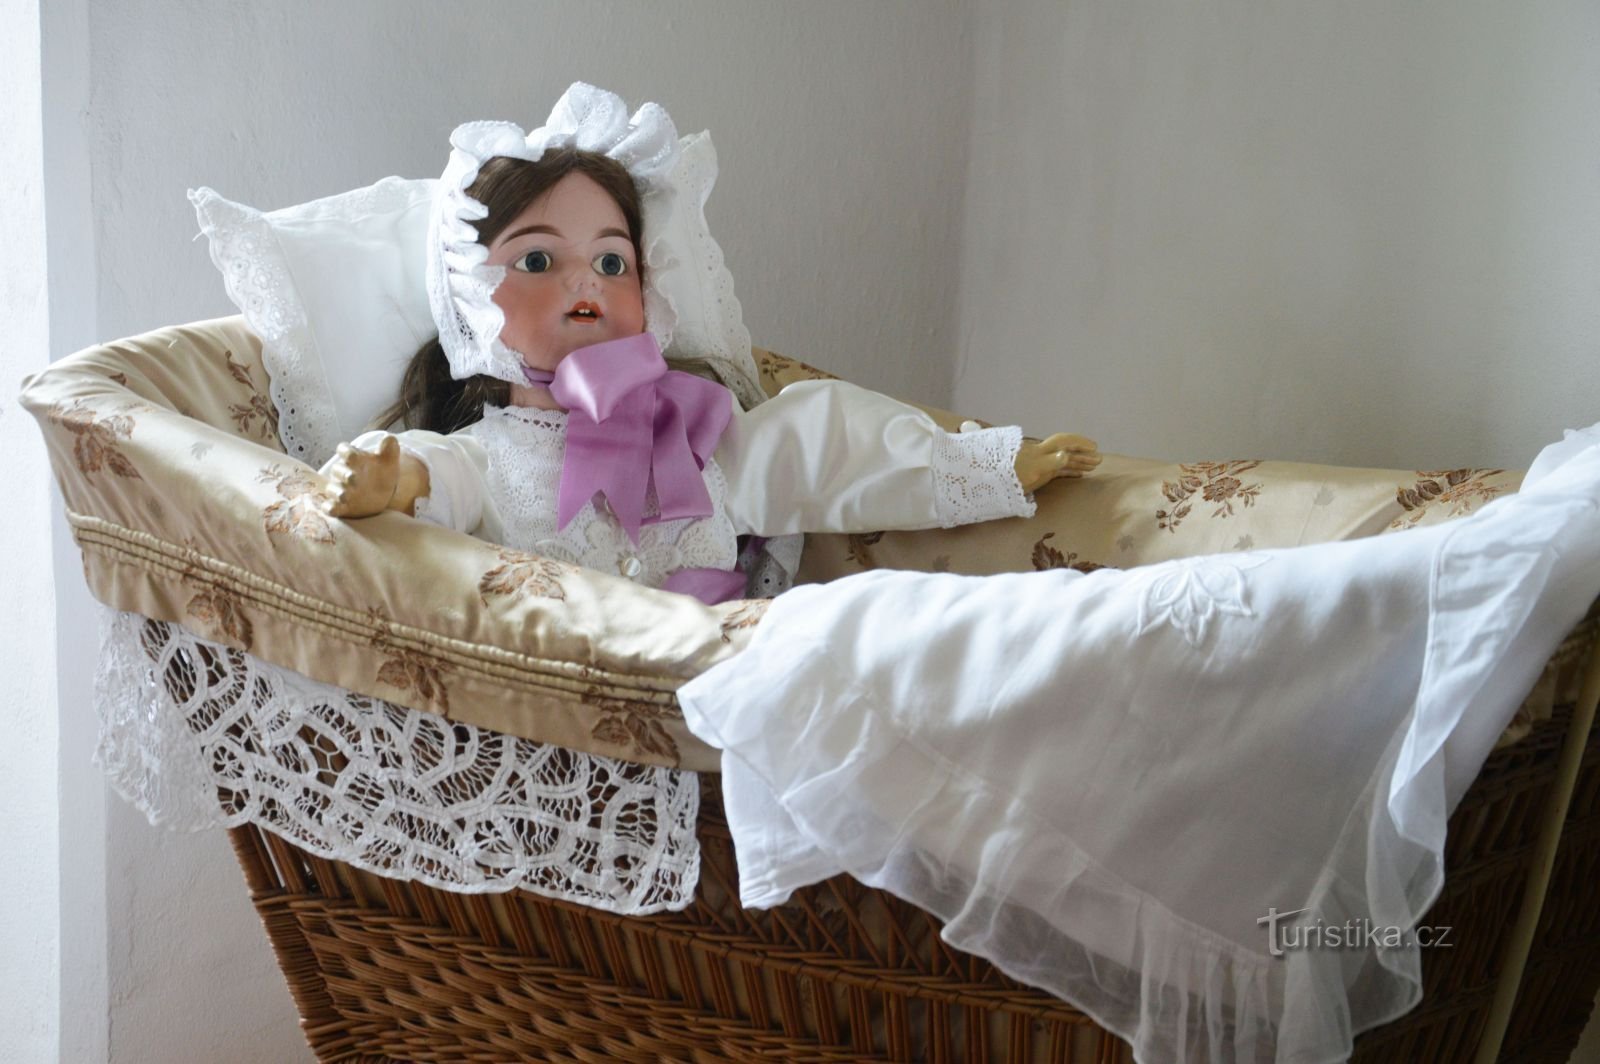 Ίσως συναντήσετε κι εσείς την αγαπημένη σας κούκλα στην έκθεση στο μοναστήρι των Βοτικών. Φωτογραφία: